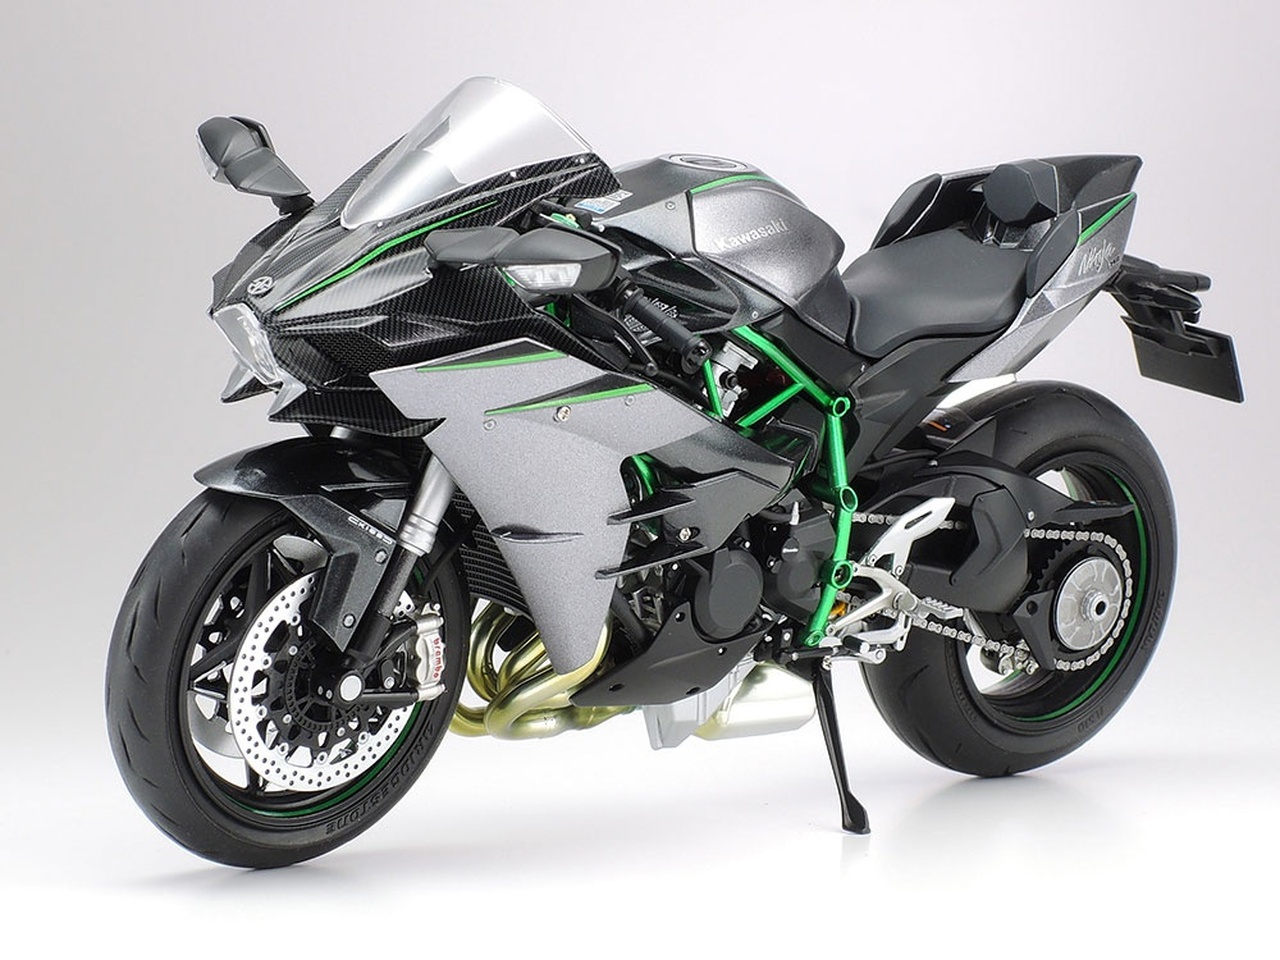 Top 50 ảnh Kawasaki ninja h2r độ siêu đẹp giá hơn 1 tỉ đồng